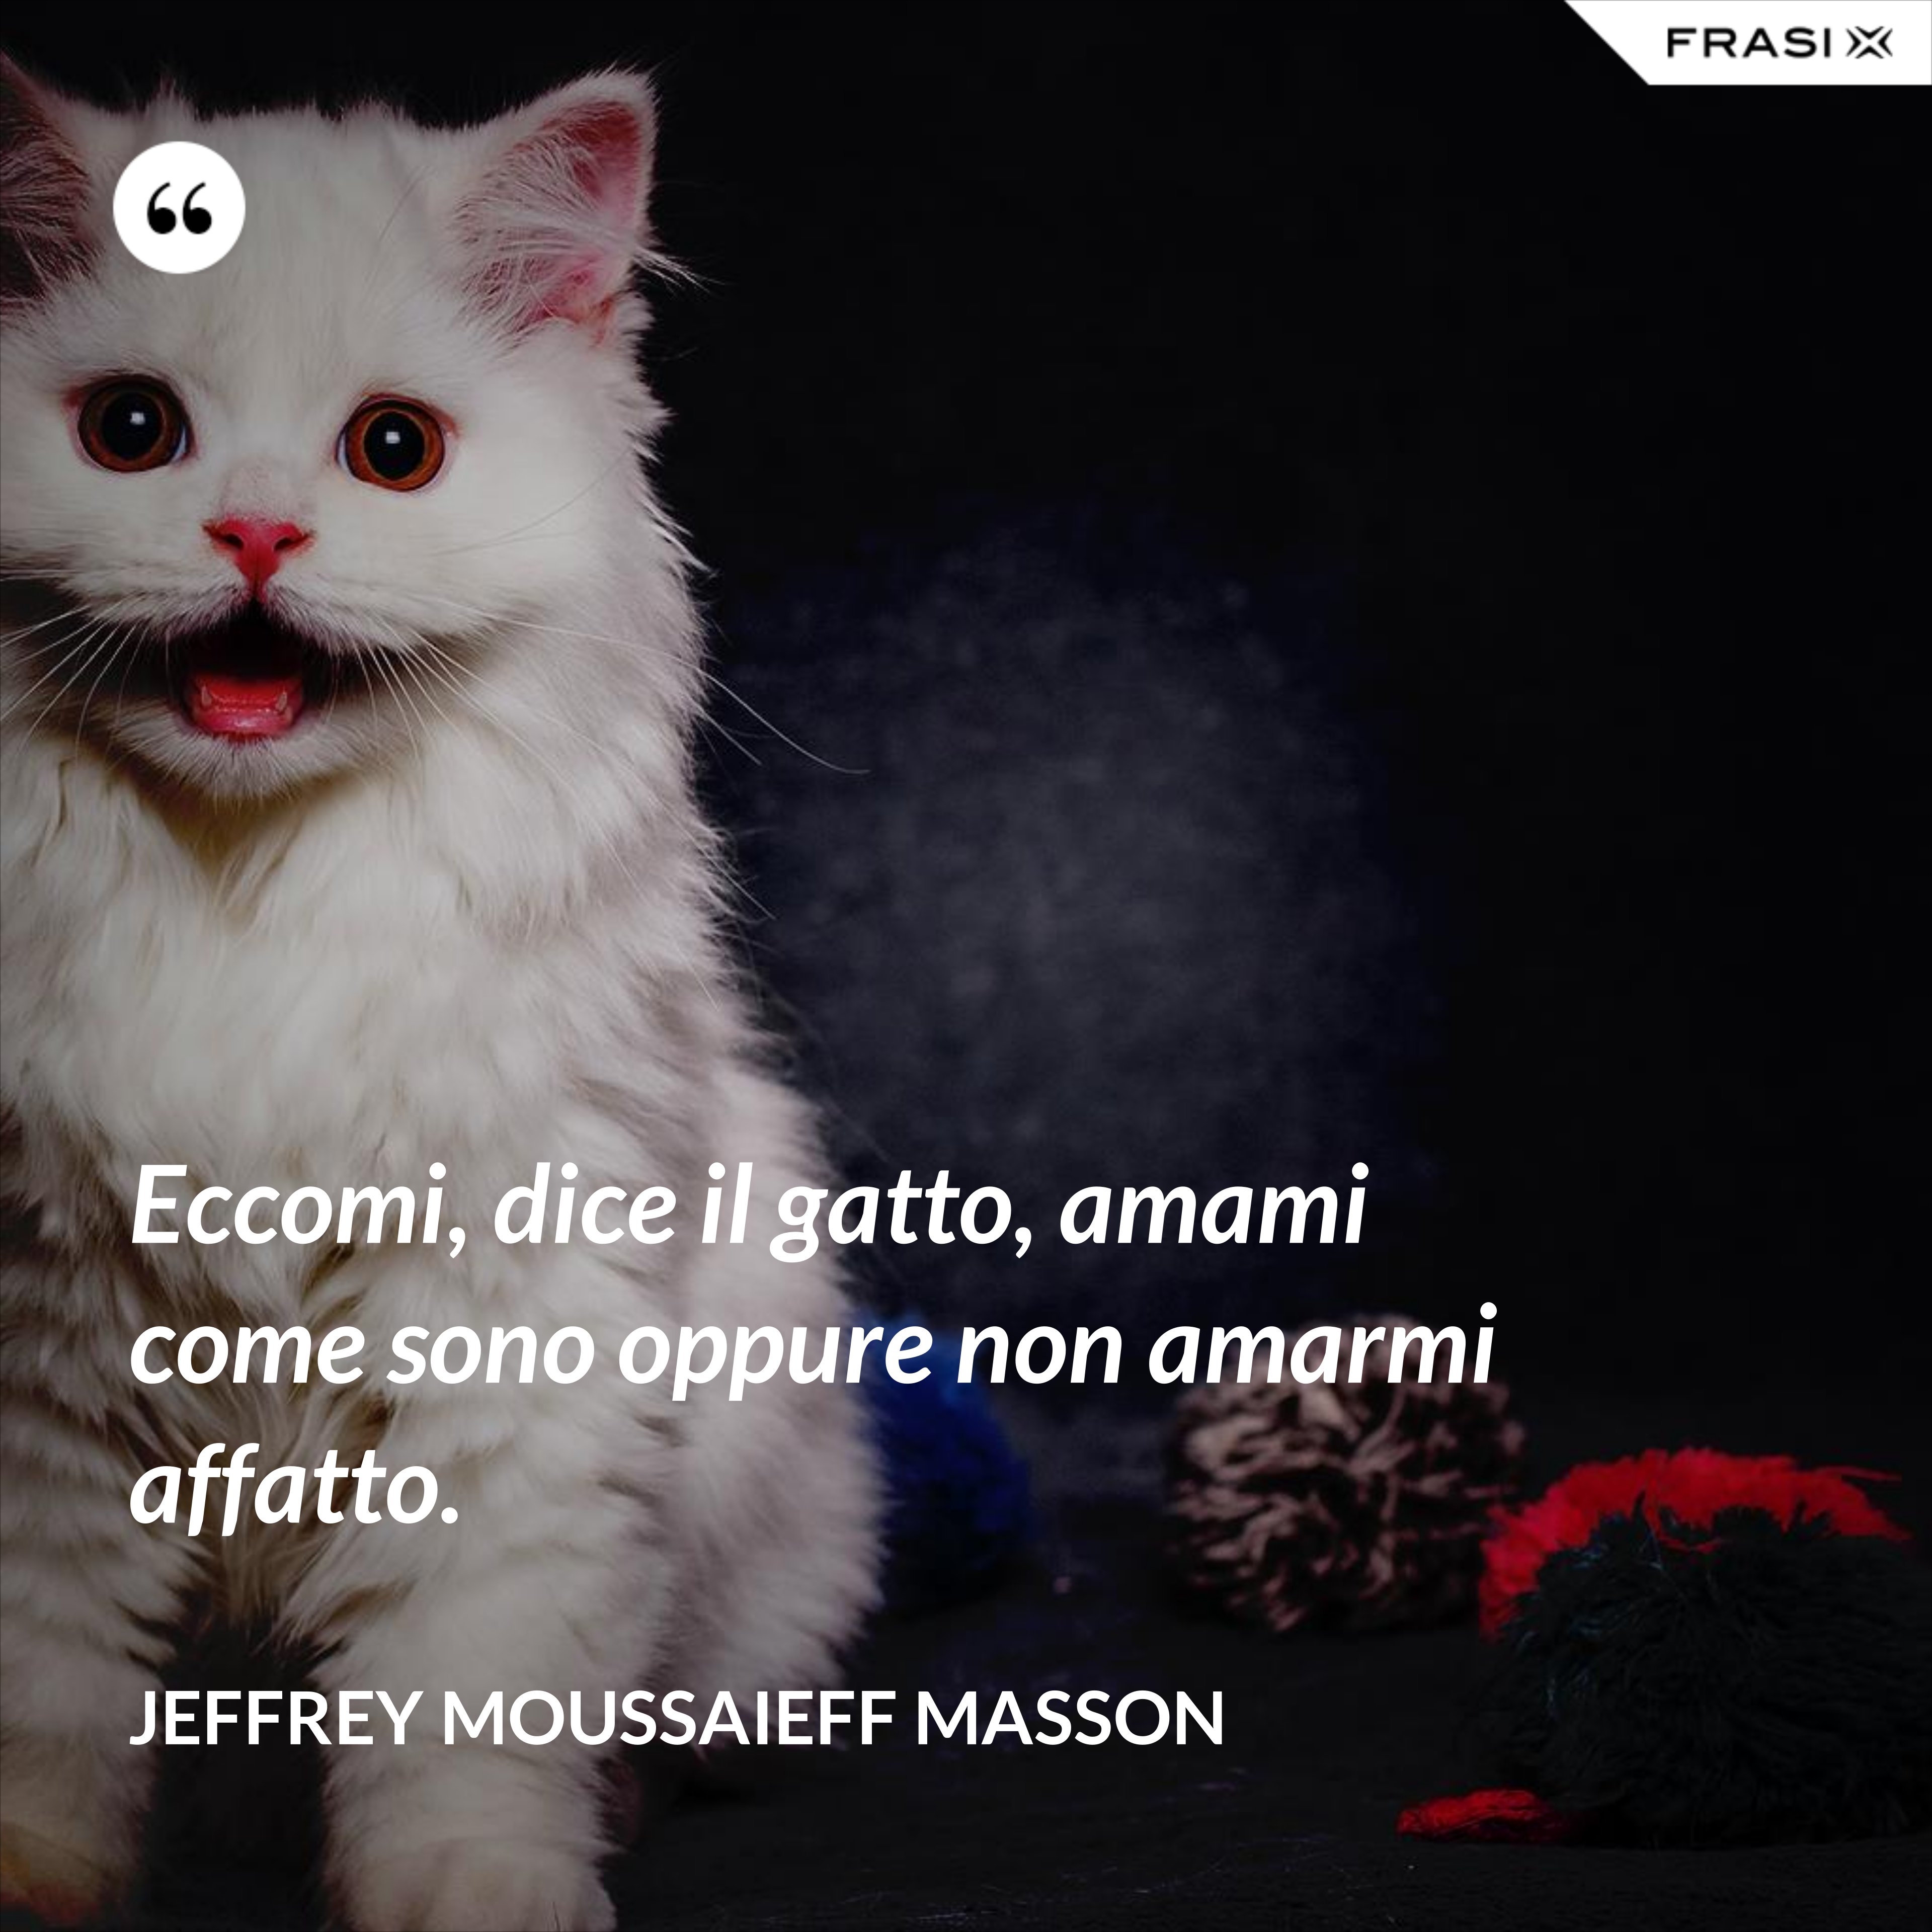 Eccomi, dice il gatto, amami come sono oppure non amarmi affatto. - Jeffrey Moussaieff Masson